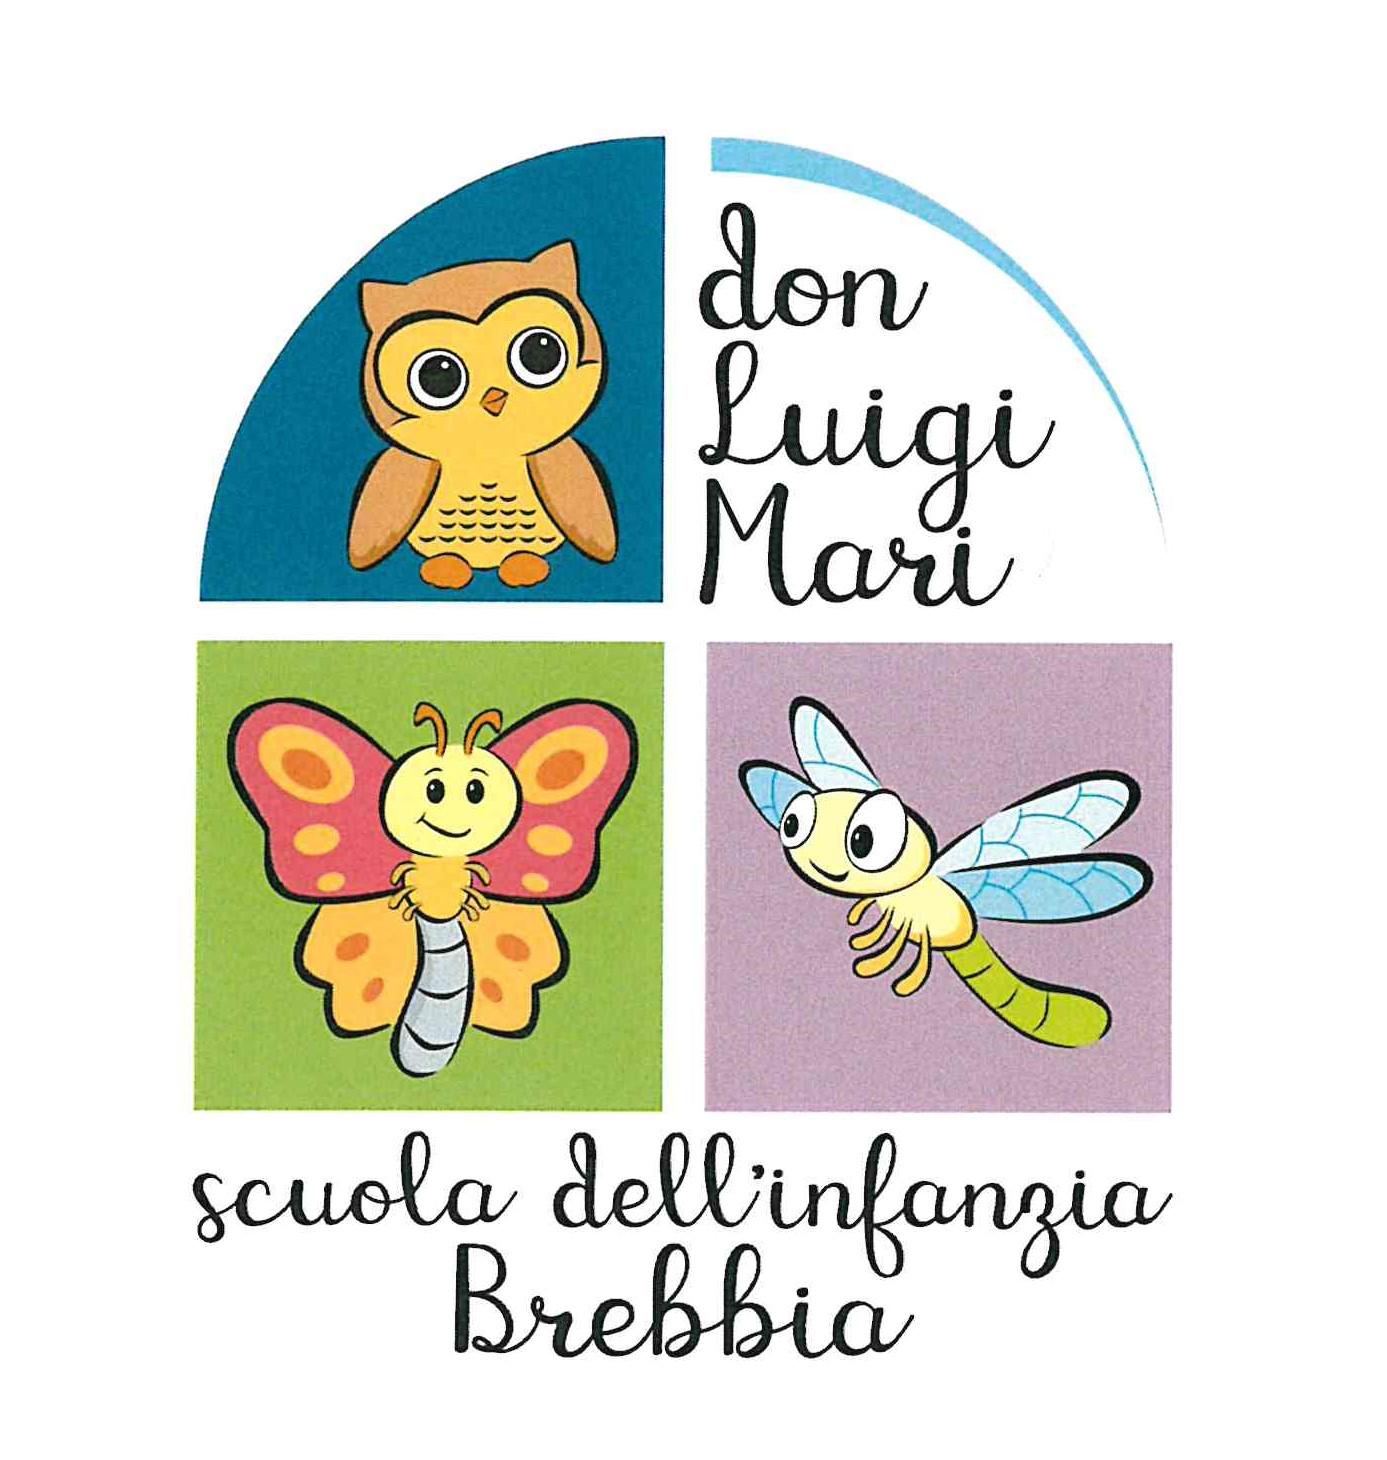 Parrocchia dei Santi Pietro e Paolo di Brebbia - Gestione Scuola Materna Paritaria Parrocchiale "Don Luigi Mari"